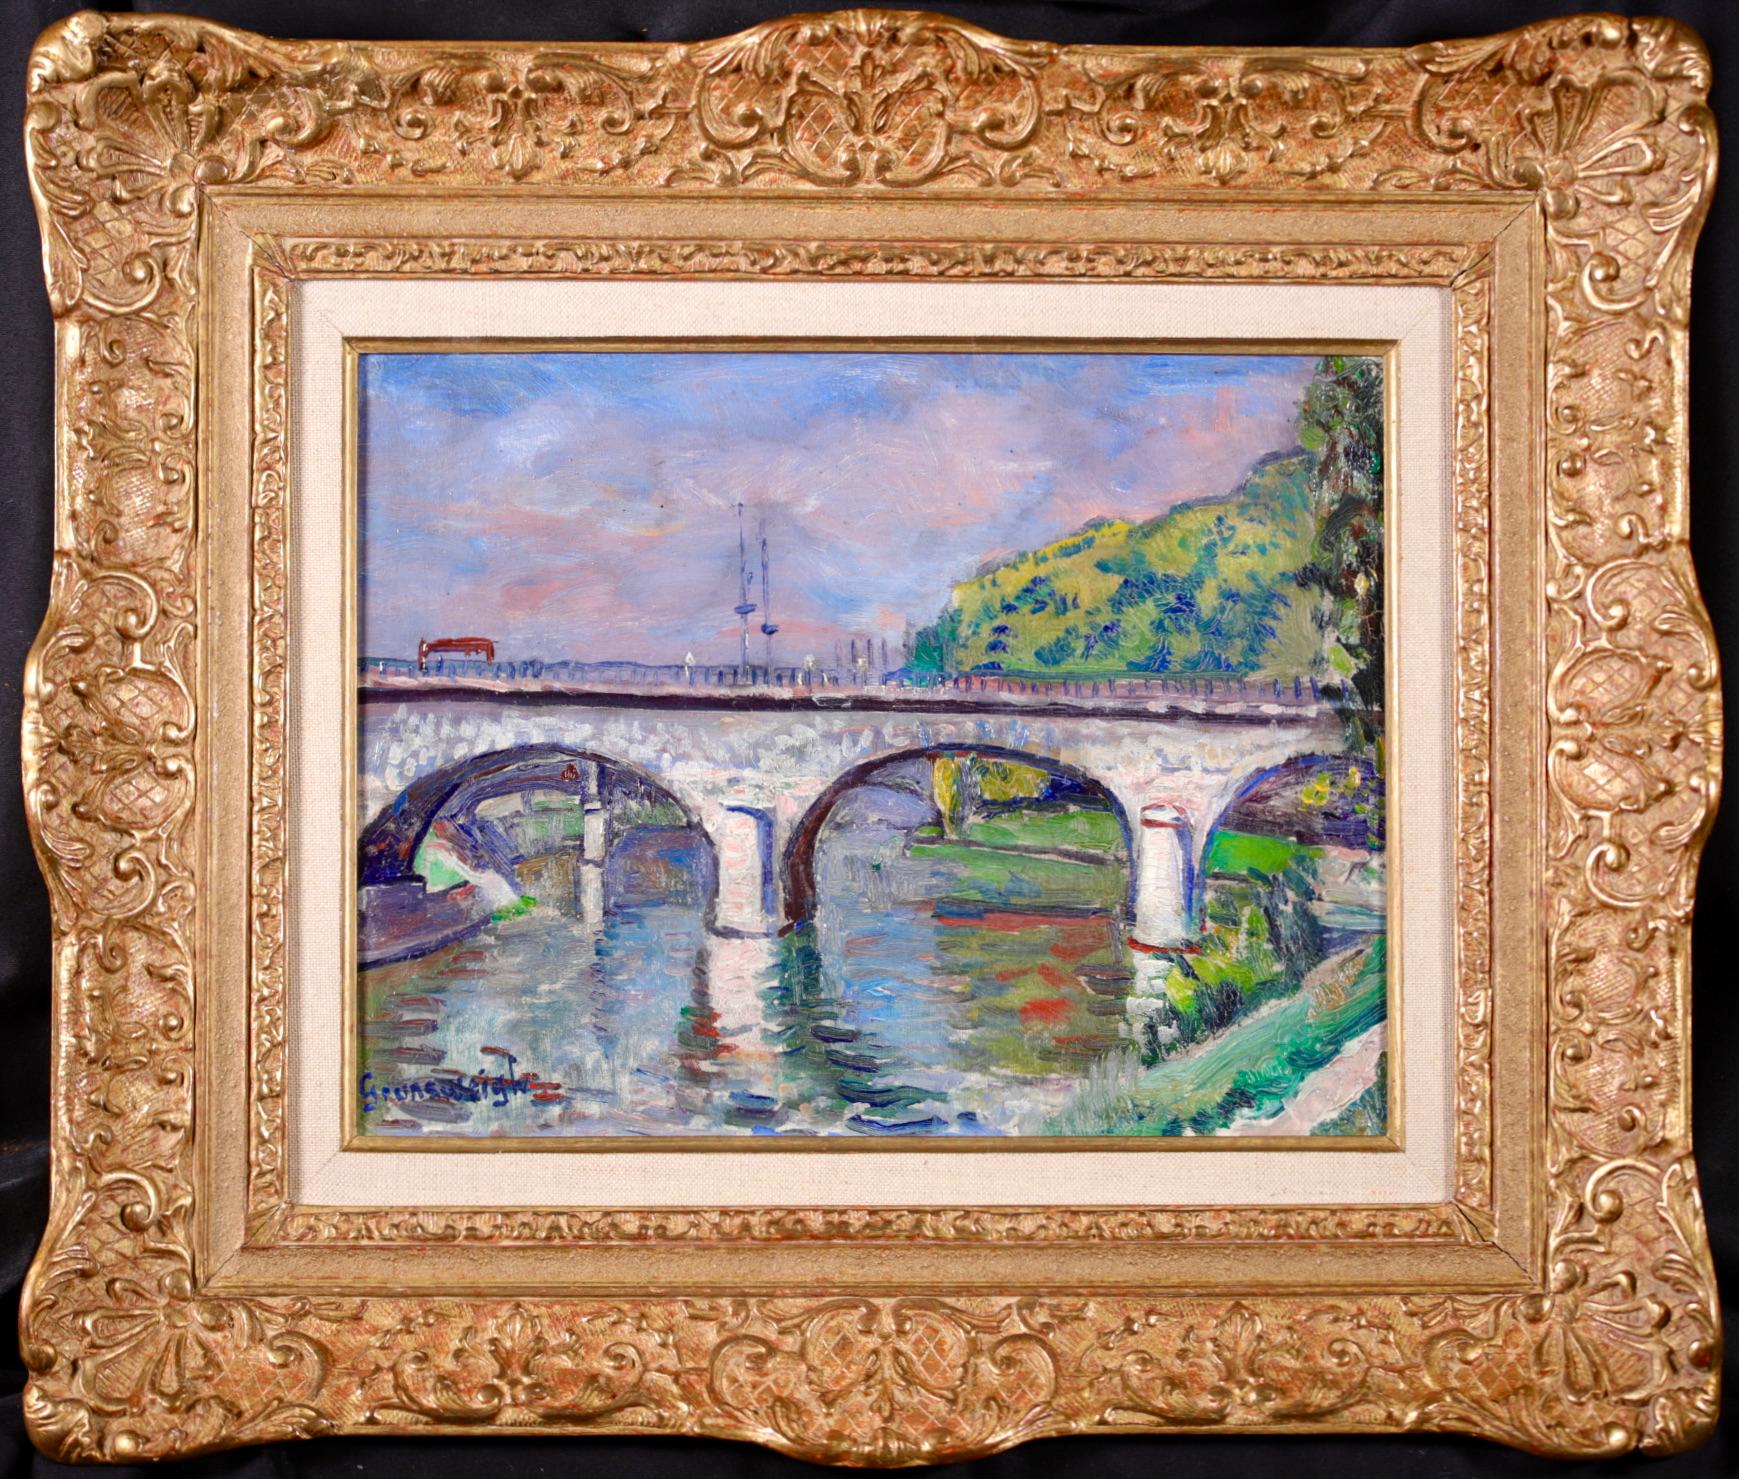 Huile sur toile post impressionniste signée, paysage fluvial, circa 1920, du peintre polonais Nathan Grunsweigh. L'œuvre représente une vue du pont sur la Seine à Paris. Une pièce magnifiquement colorée.

Signature :
Signé en bas à